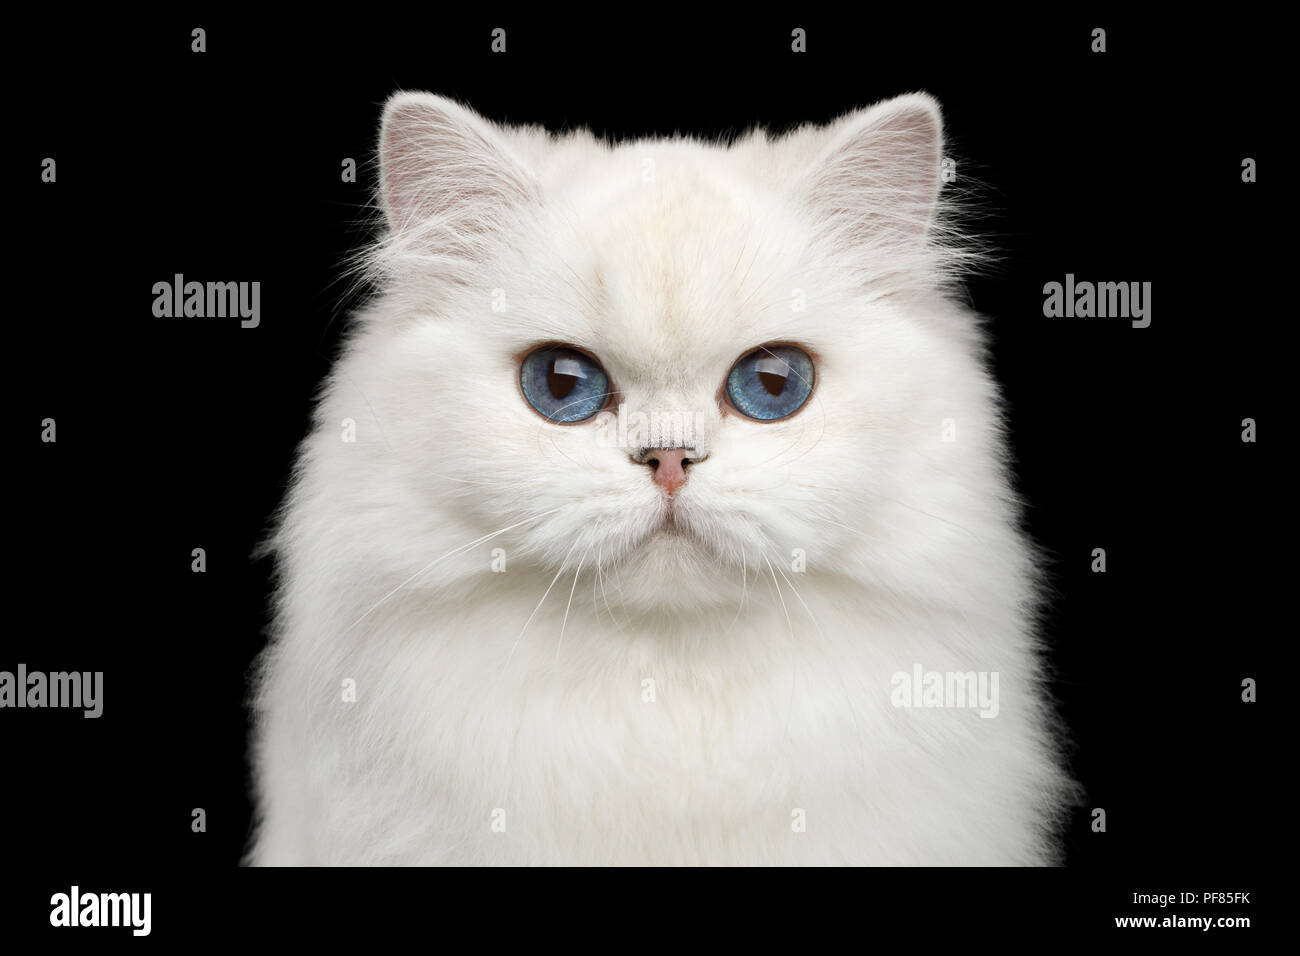 Adorable Porträt der britischen Rasse Katze, reine Farbe Weiß mit blauen  Augen, in die Kamera schauen auf Isolierte schwarze Hintergrund,  Vorderansicht Stockfotografie - Alamy